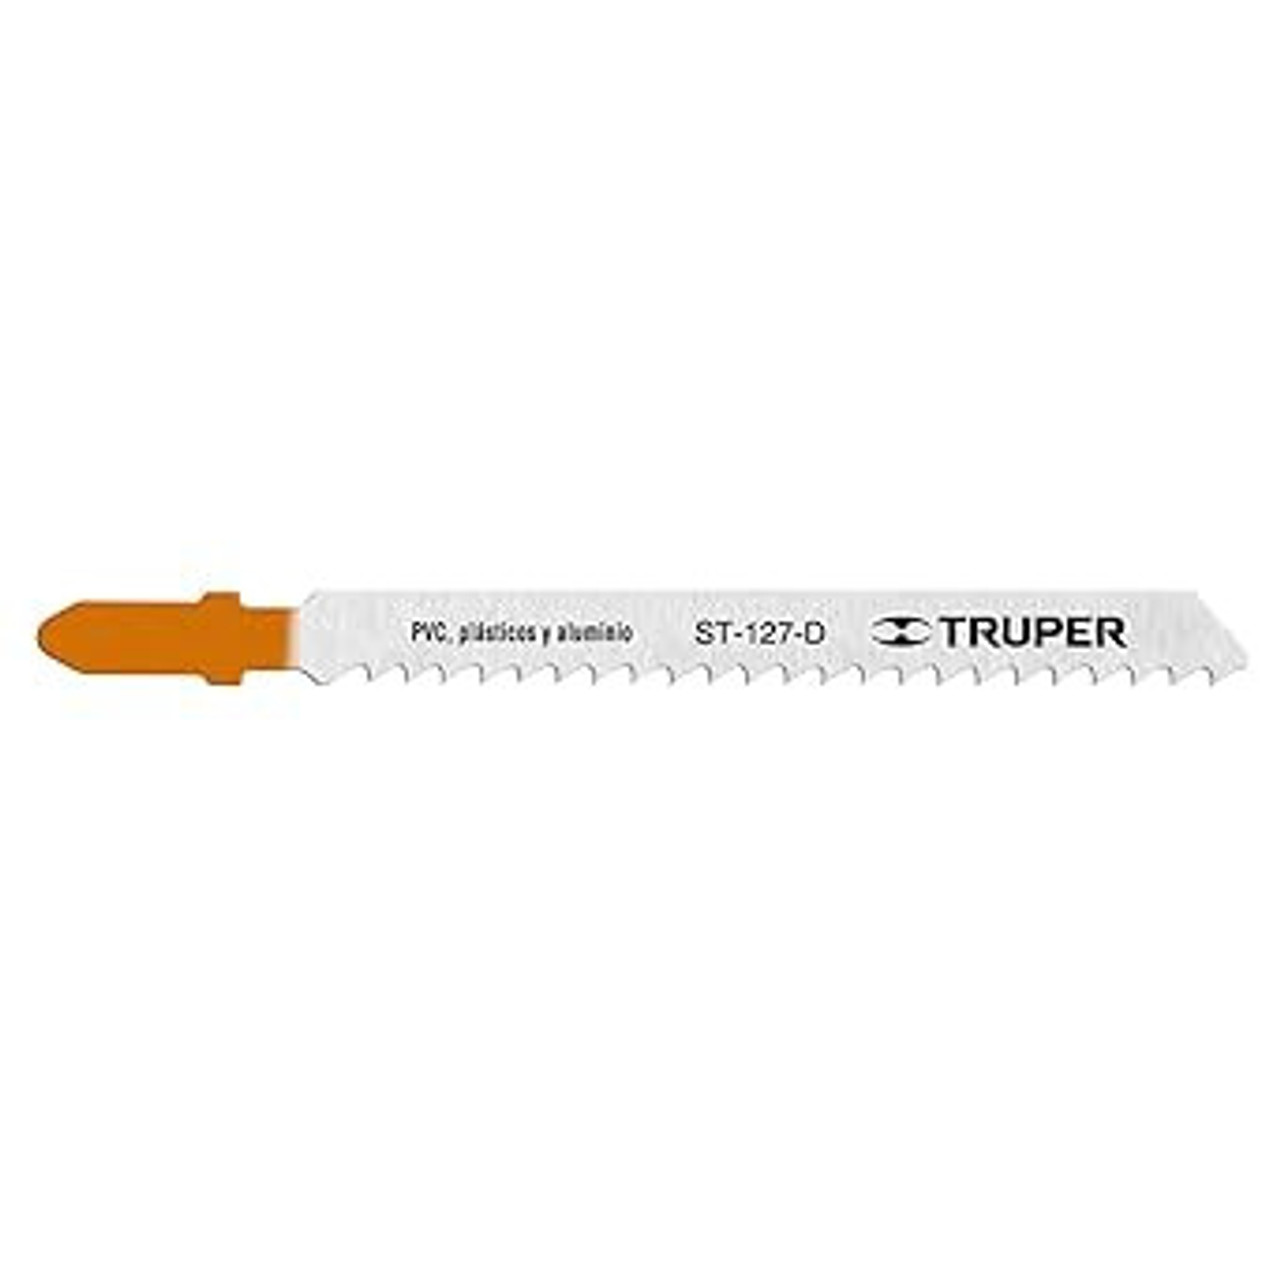 Truper T-Shank Straight Cut Jig Saw Blades for Wood Cutting , 6 Tpi Jigsaw Blade